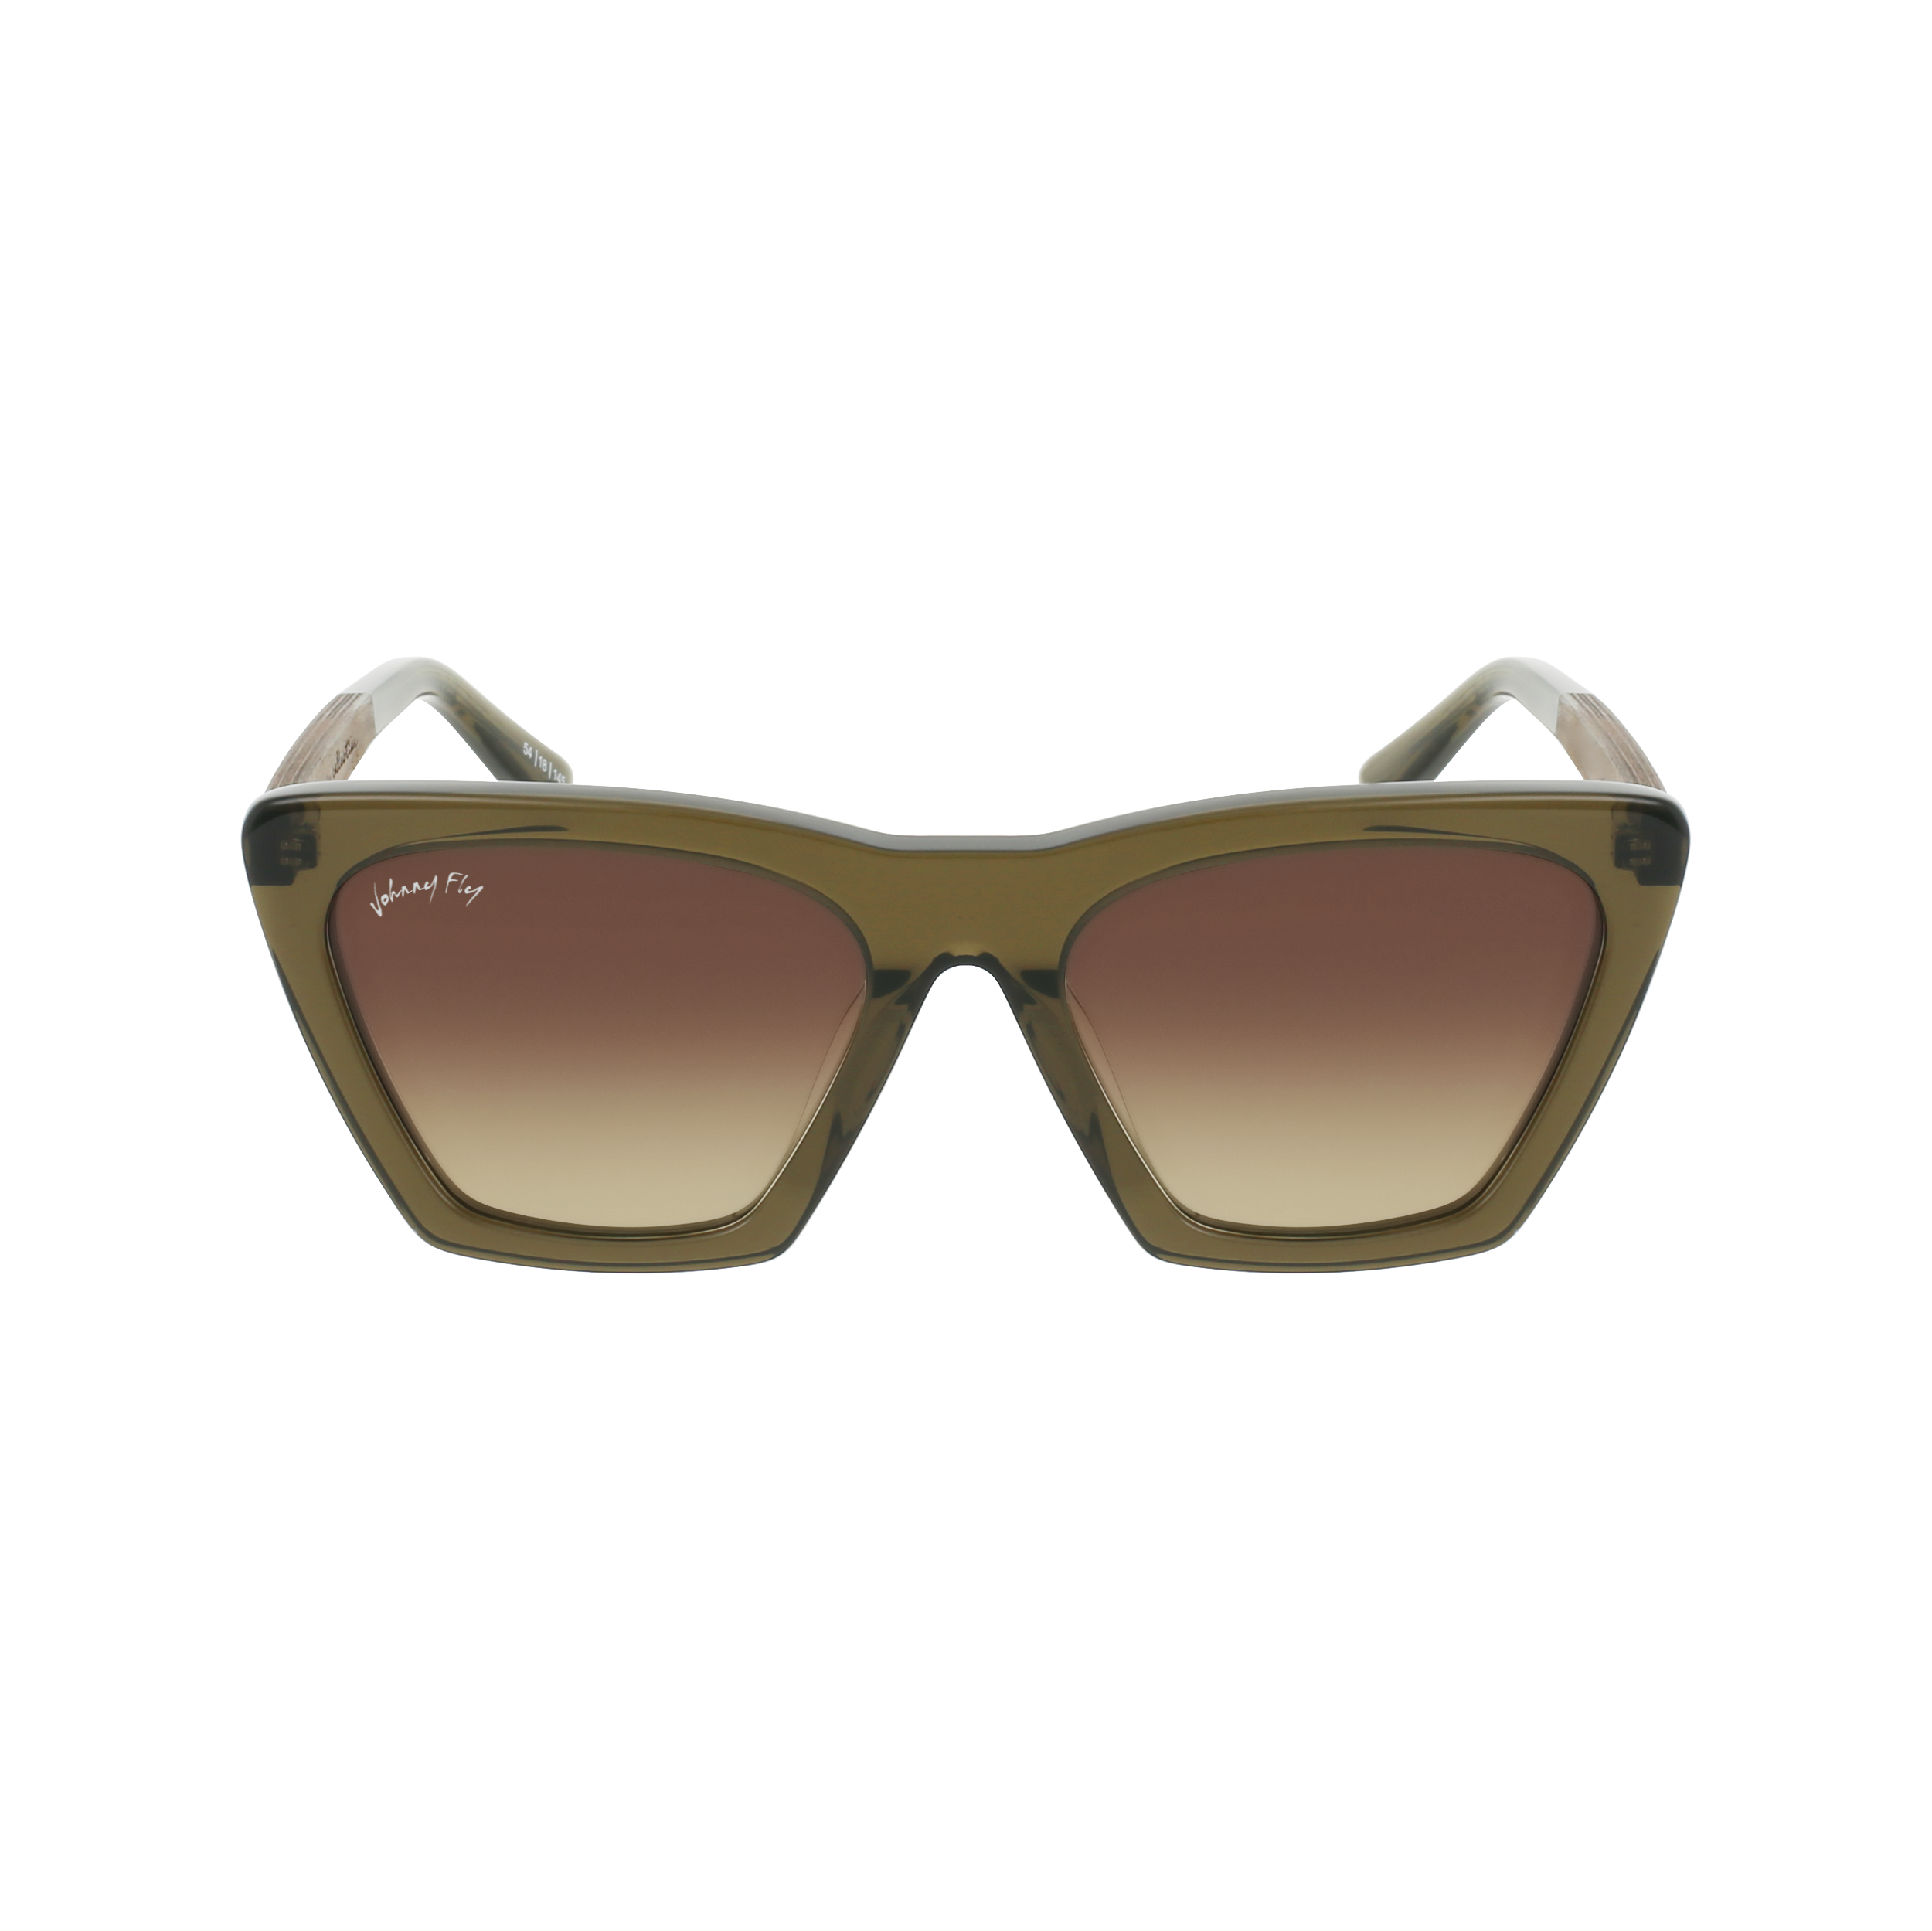 FIGURE Sunglasses Frame - Olive- Johnny Fly | FIG-OLIV-NBG126-BRG-WAL | | 